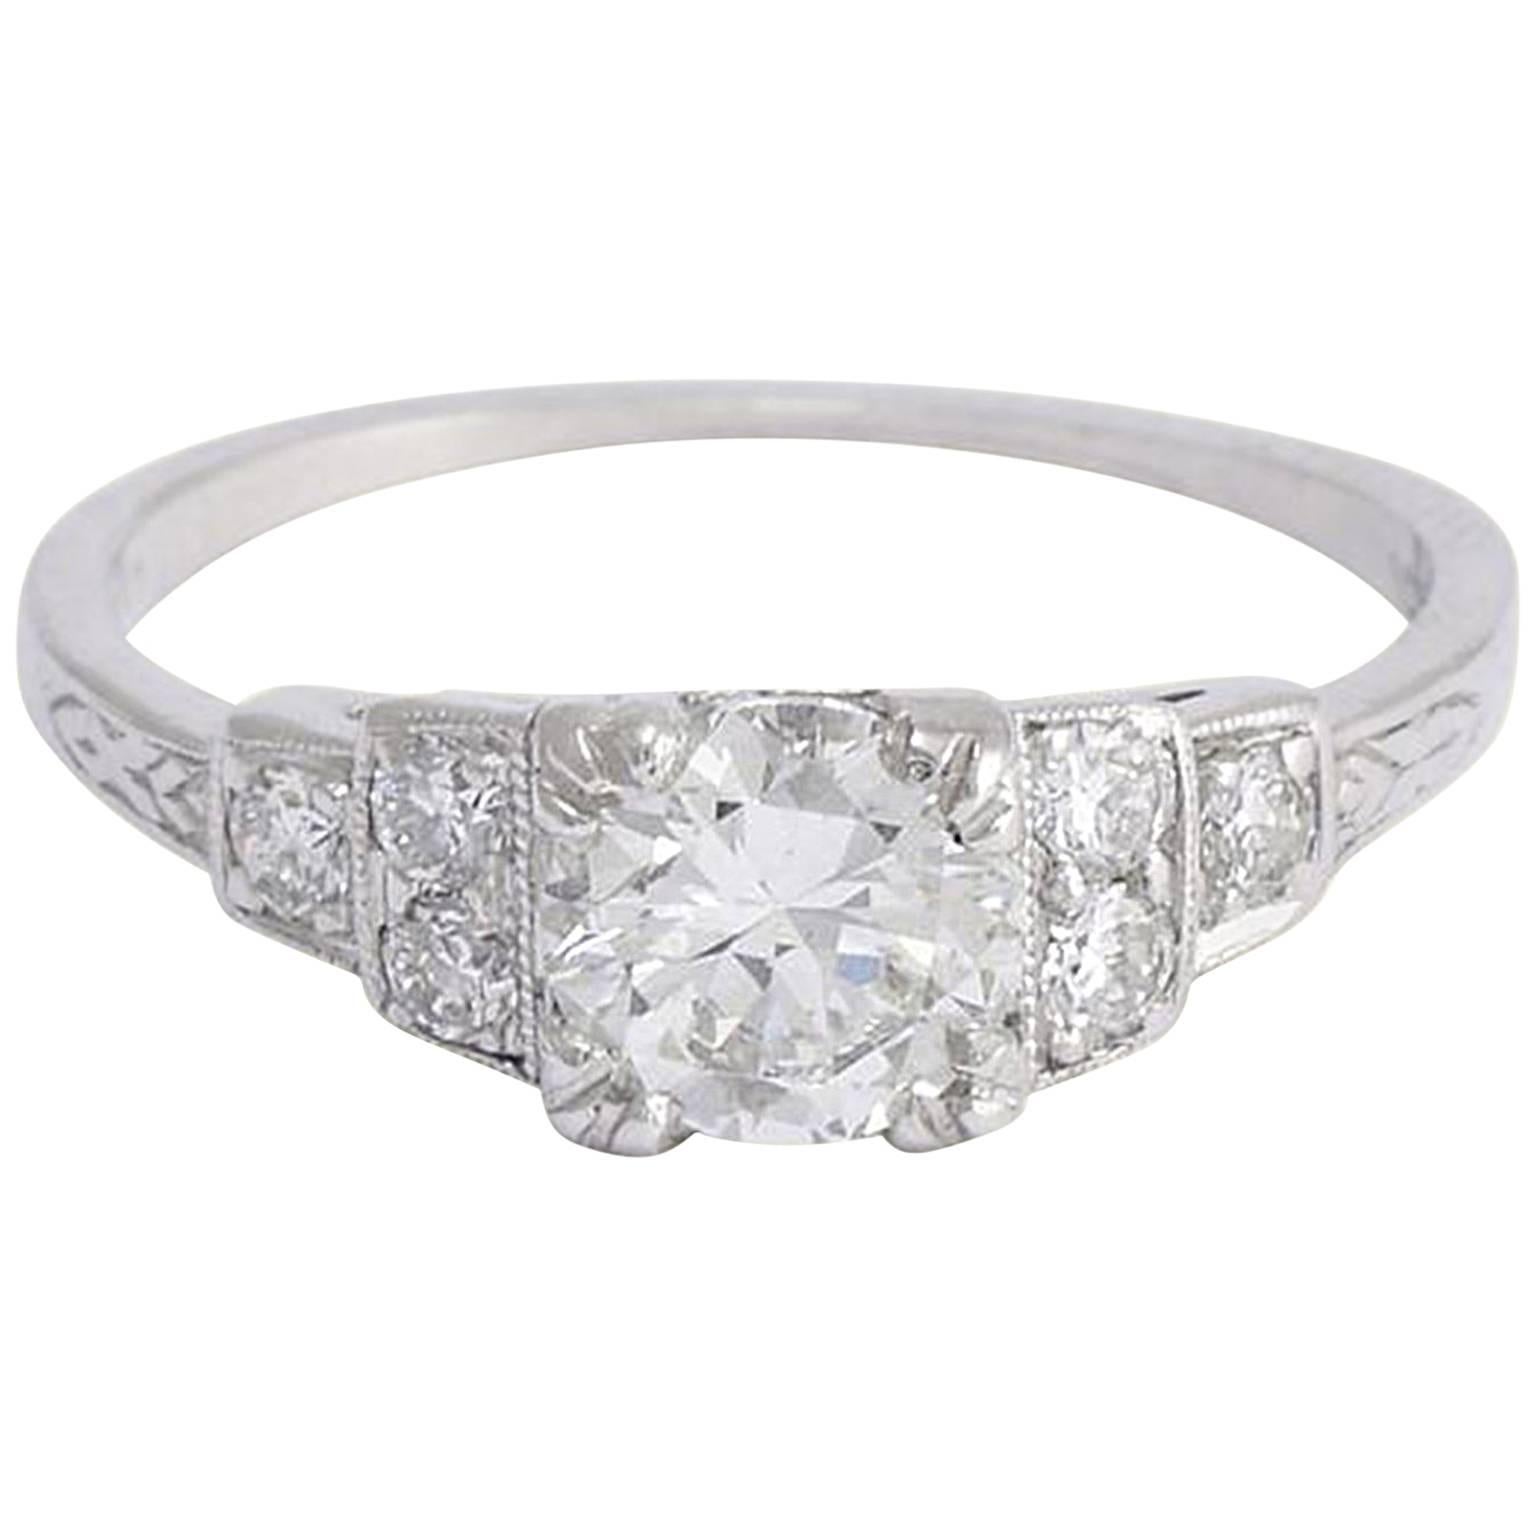 Deco Platinum .72 Carat Diamond Engagement Ring with Ziggurat Shoulders